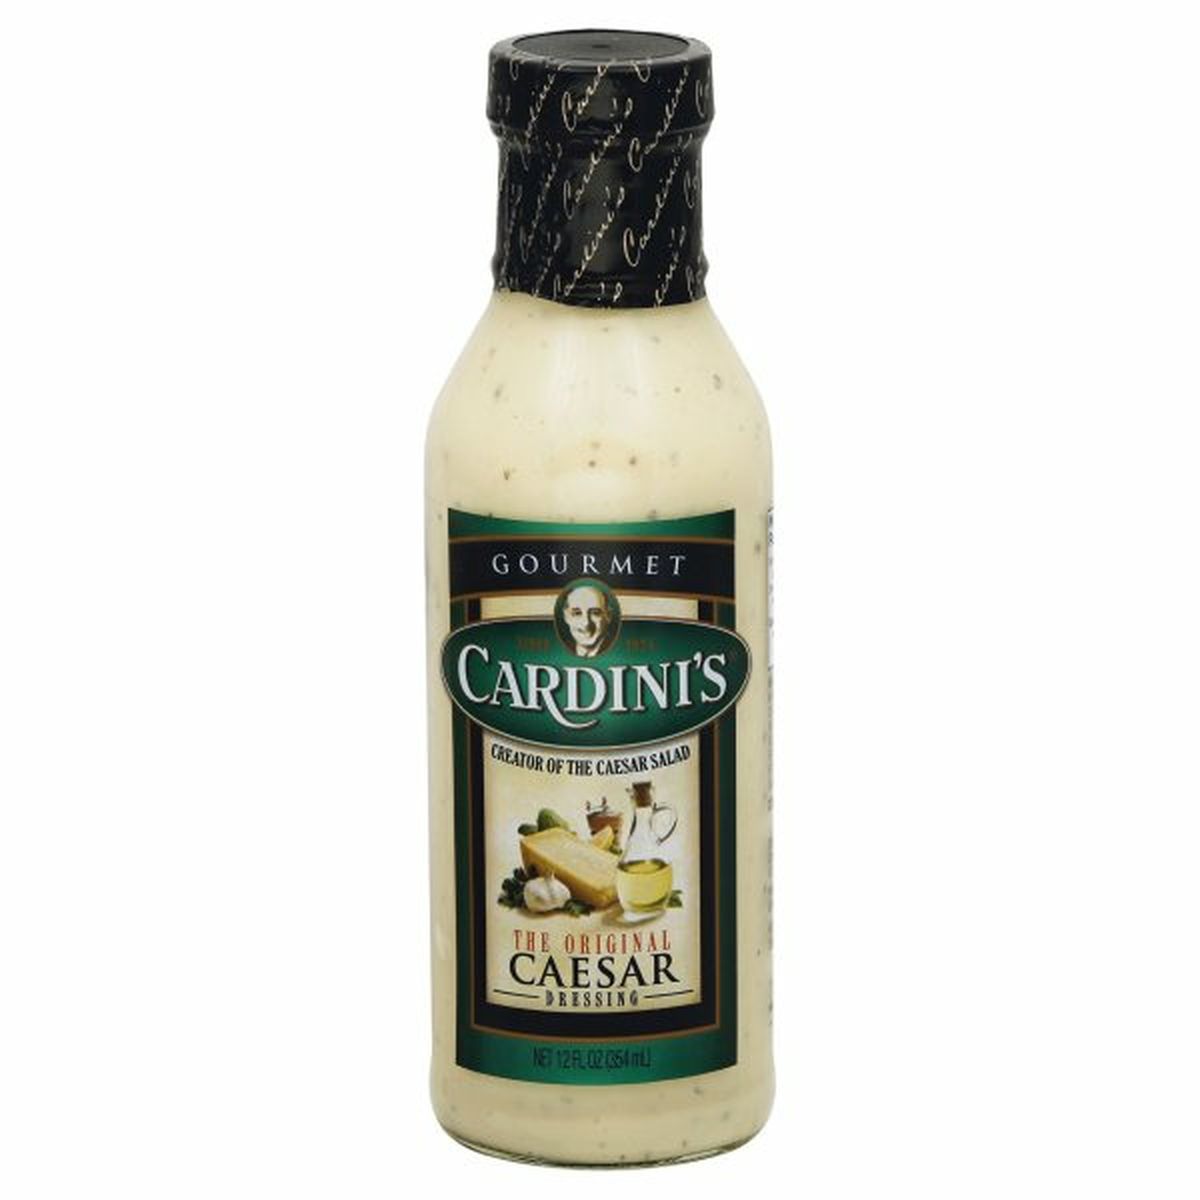 Calories in Cardini's Gourmet Dressing, The Original Caesar